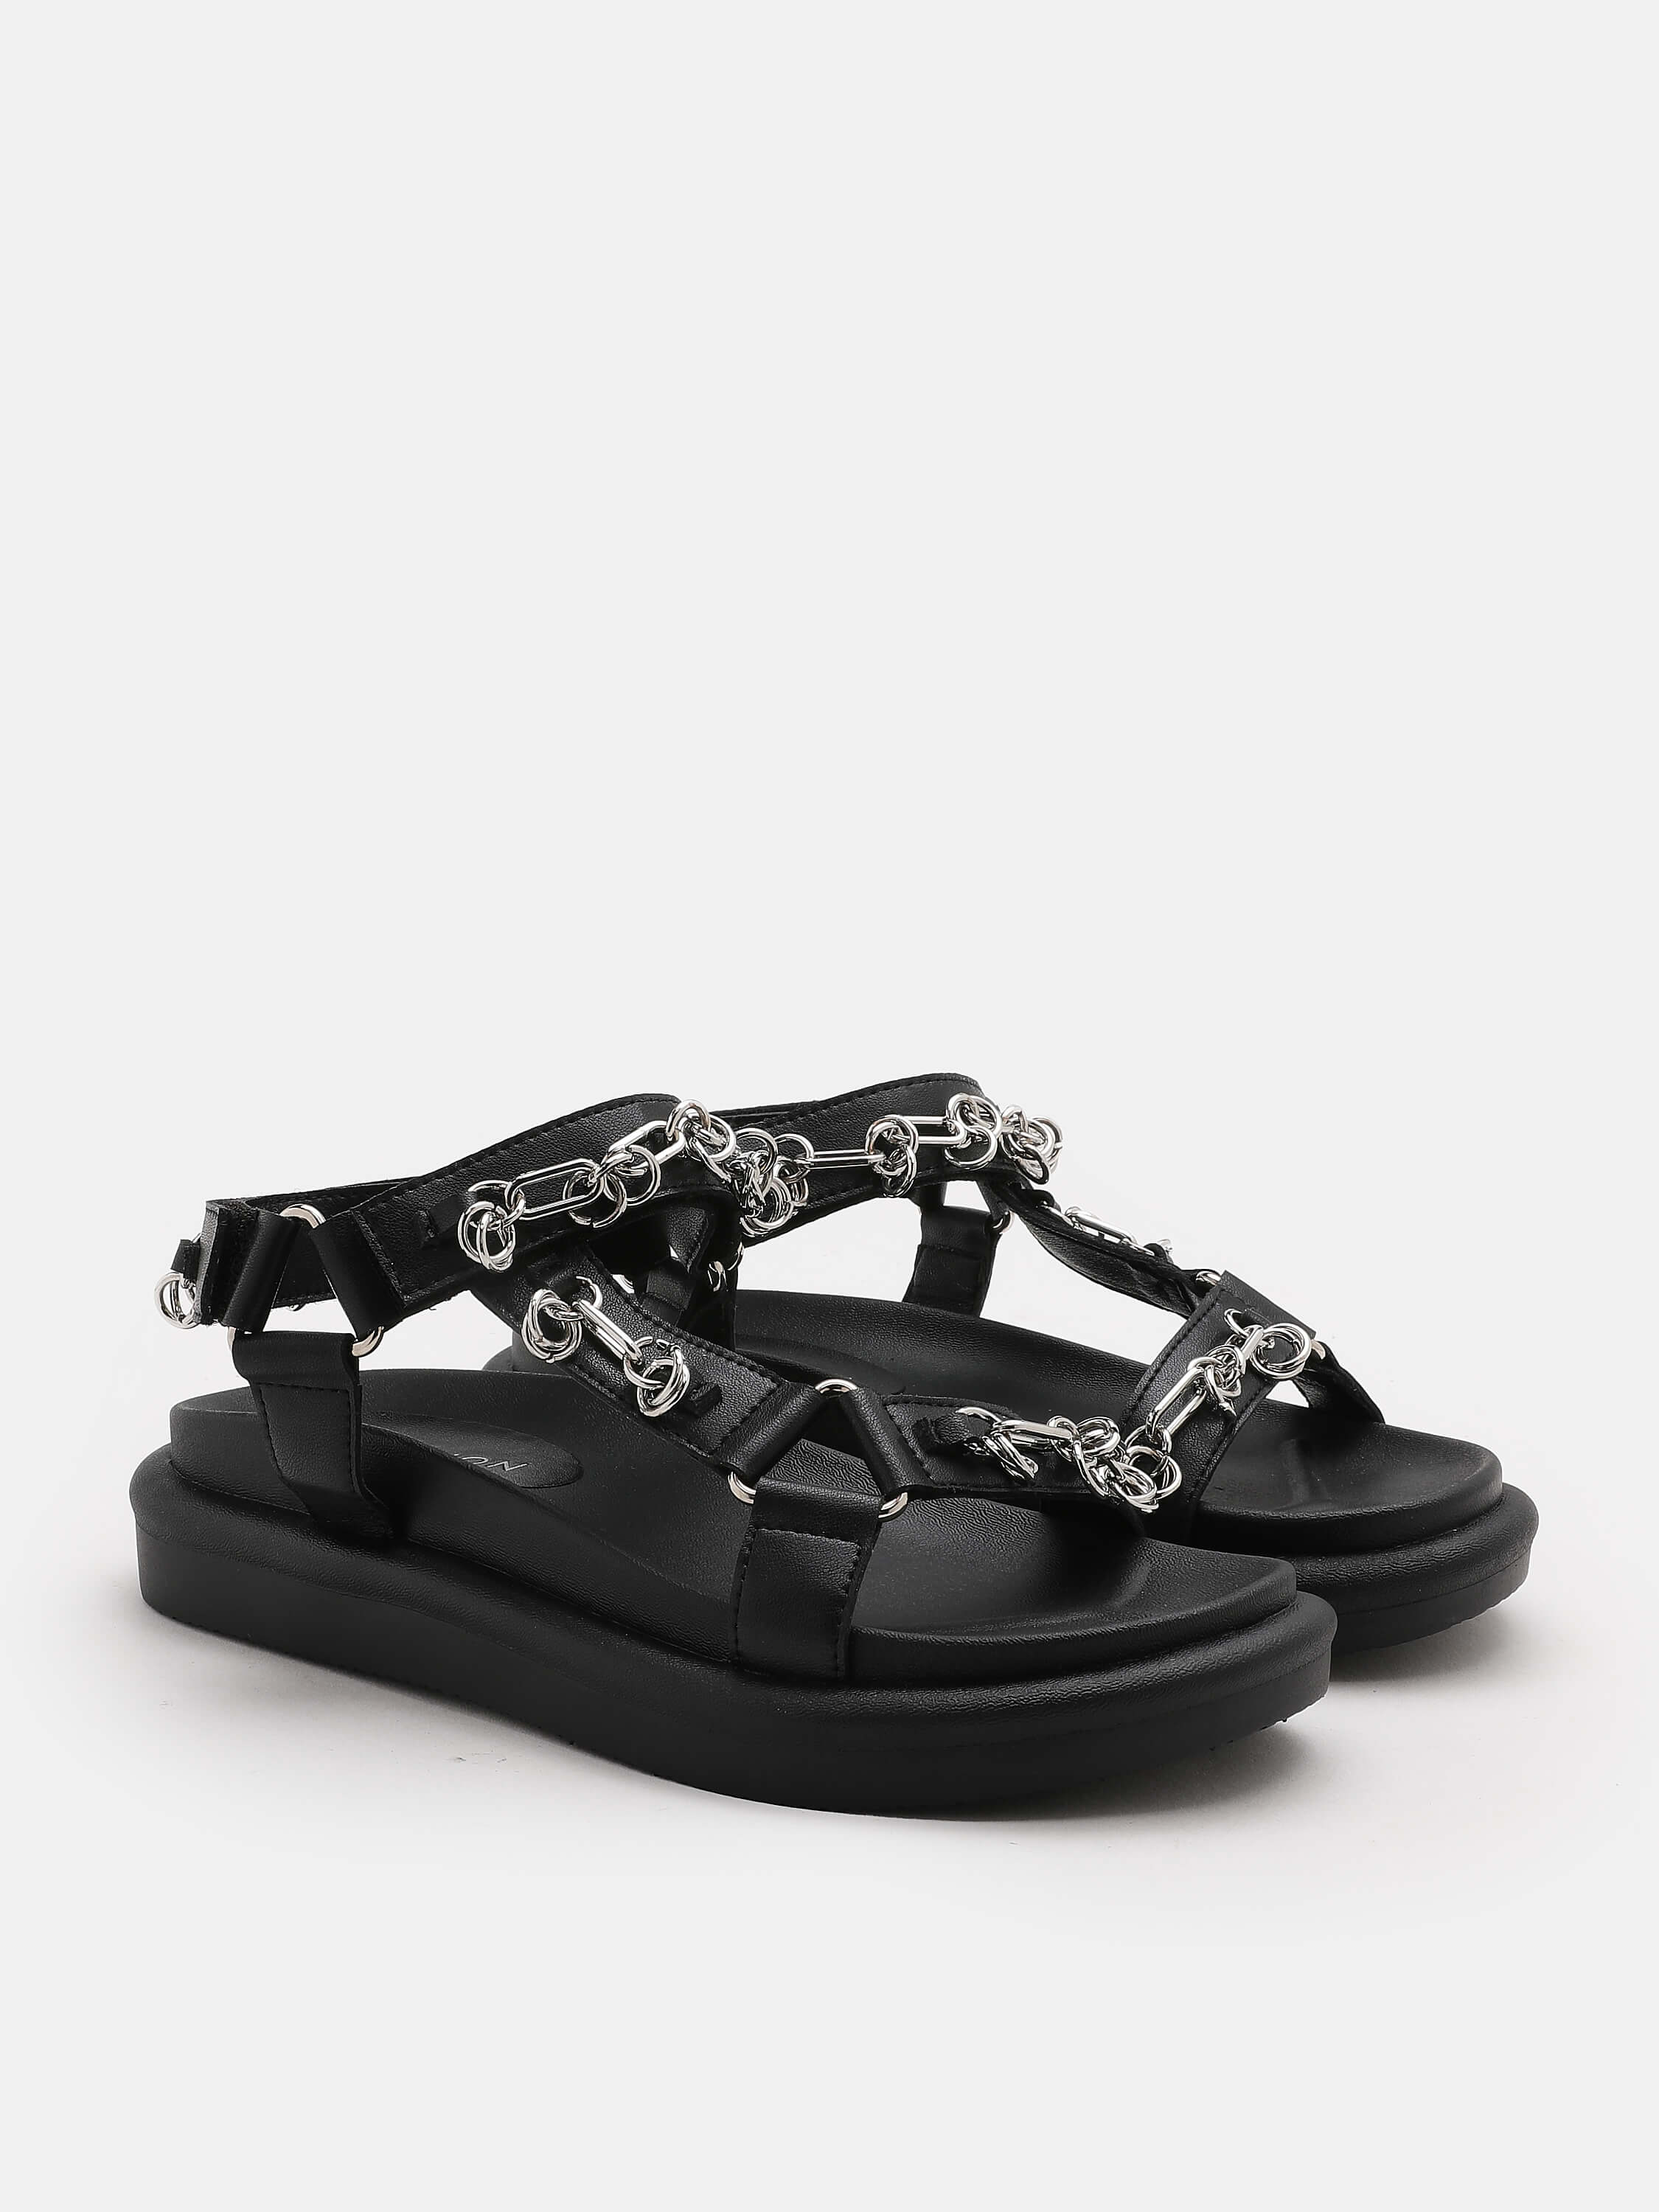 PAZZION, Octavia Platform Sandals, Black